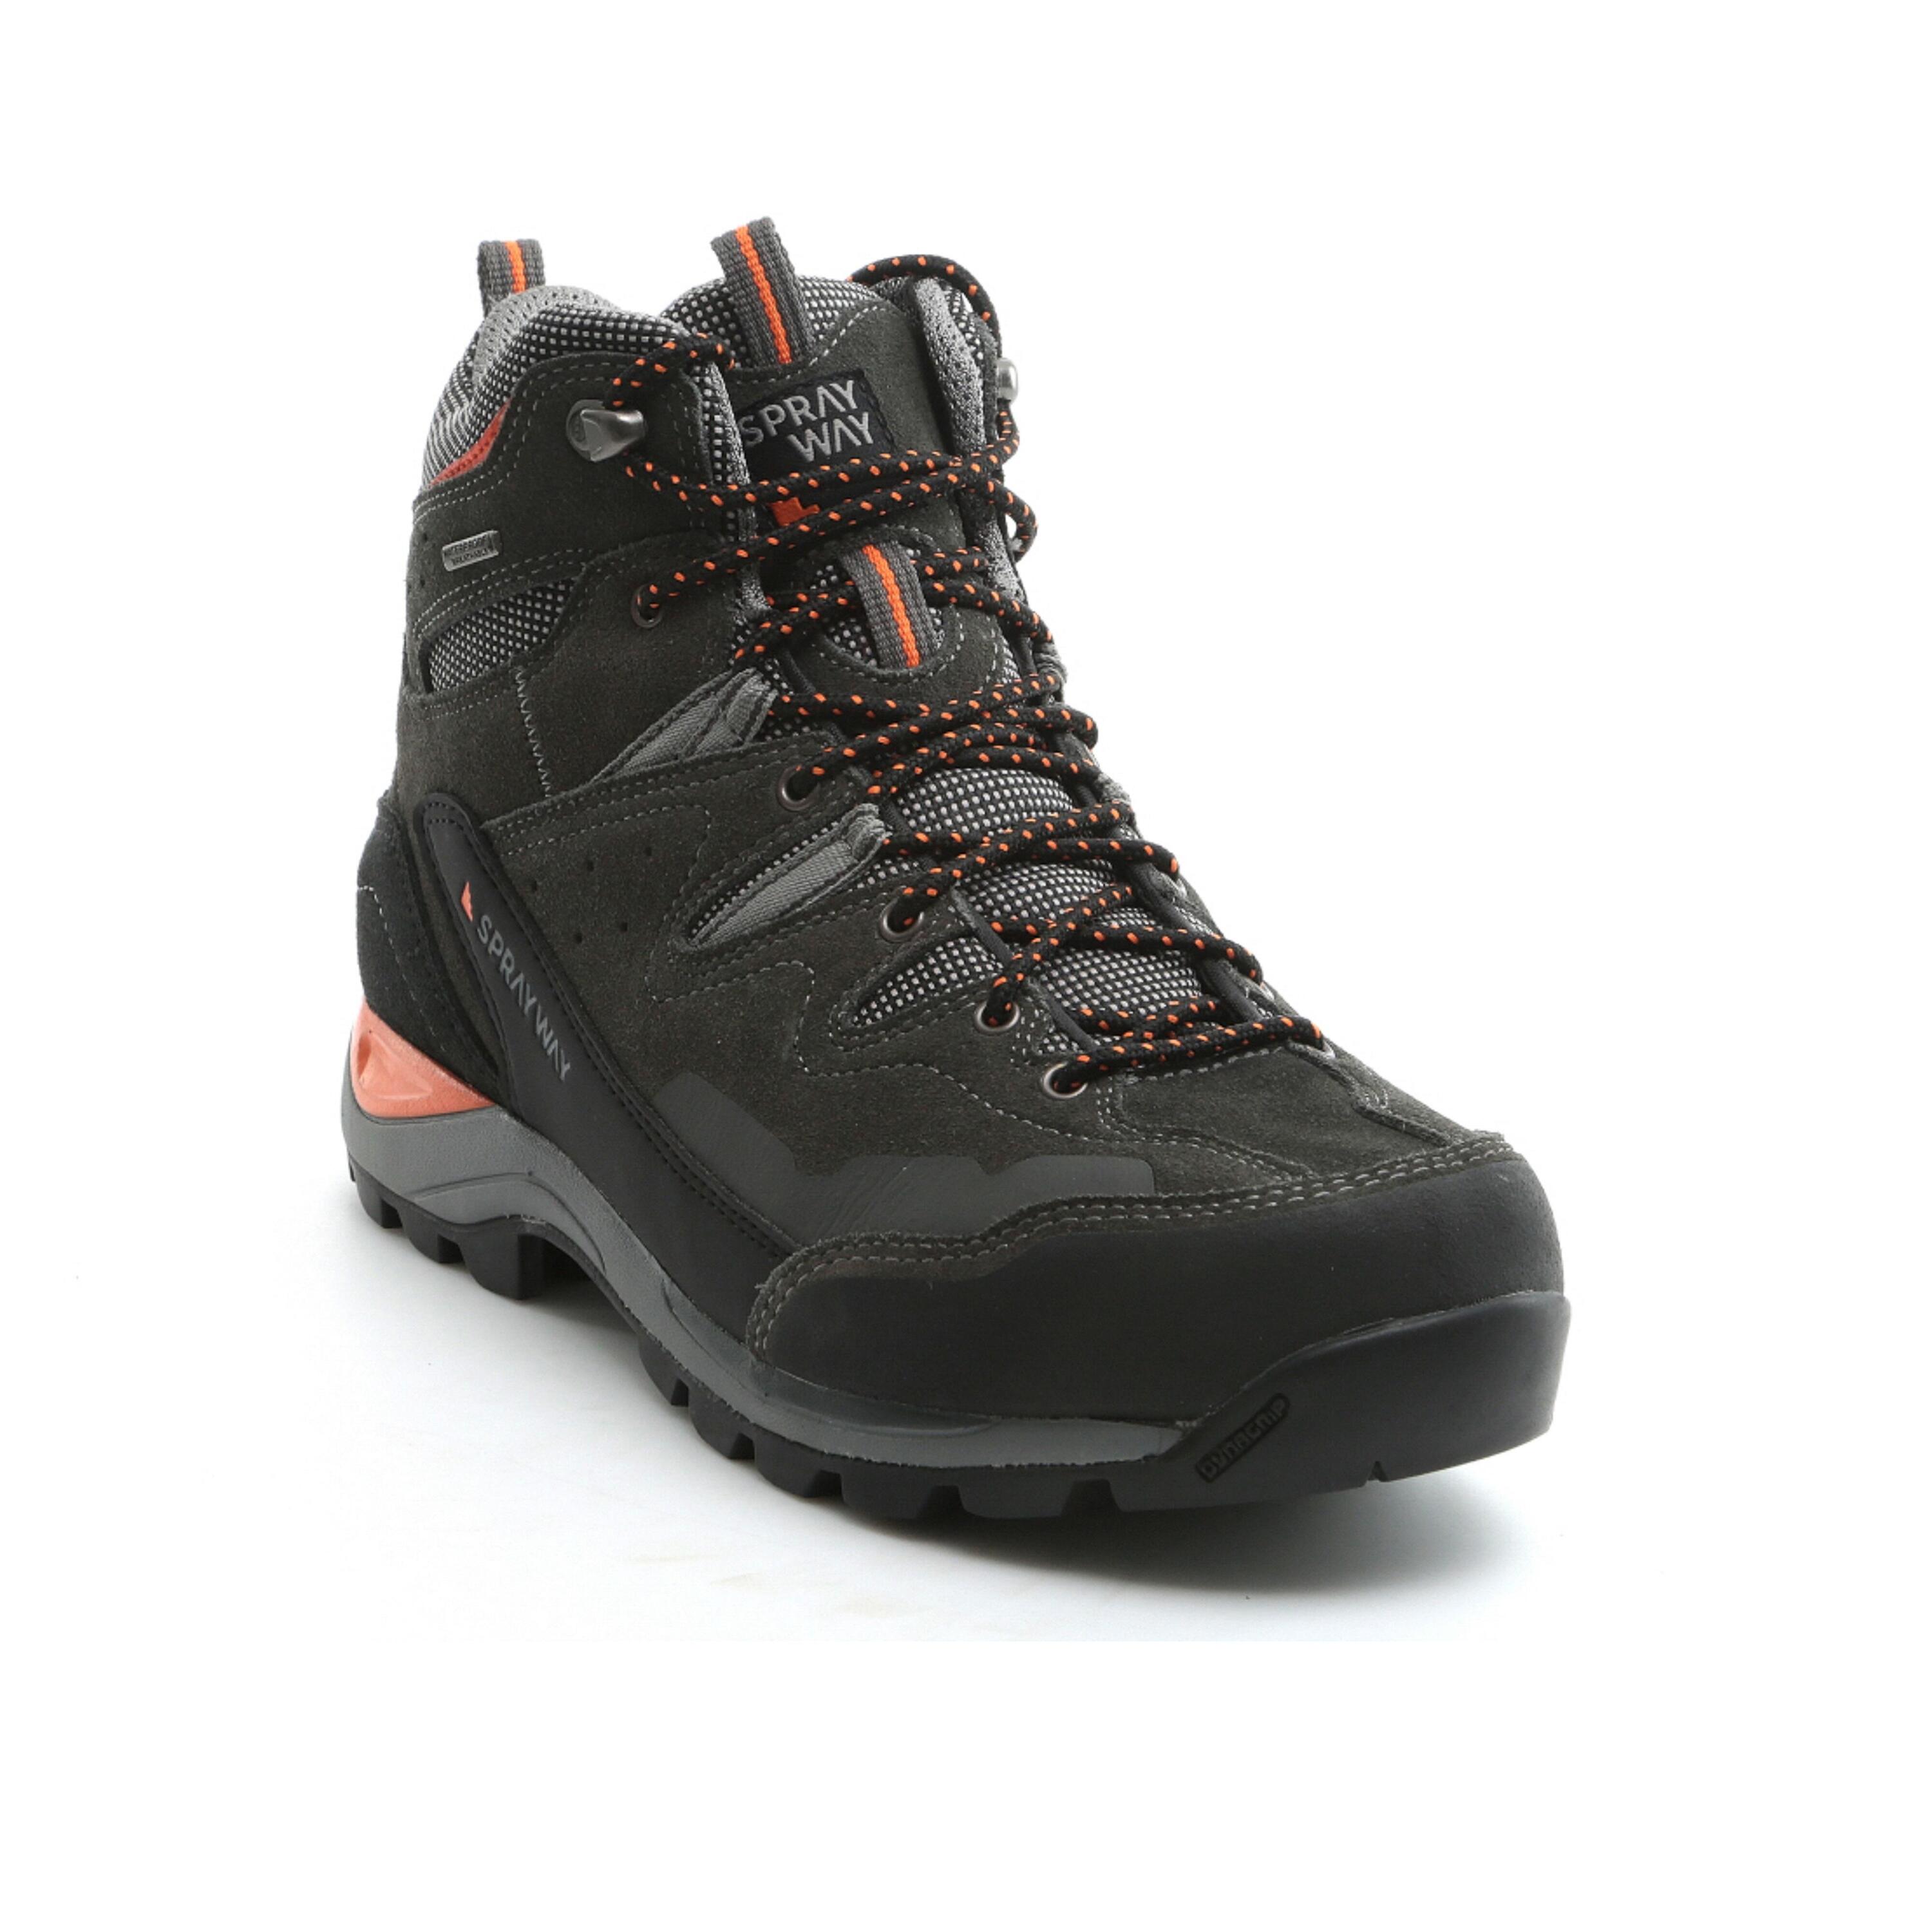 Men's waterproof walking boots - Sprayway Oxna mid - Charcoal 1/5